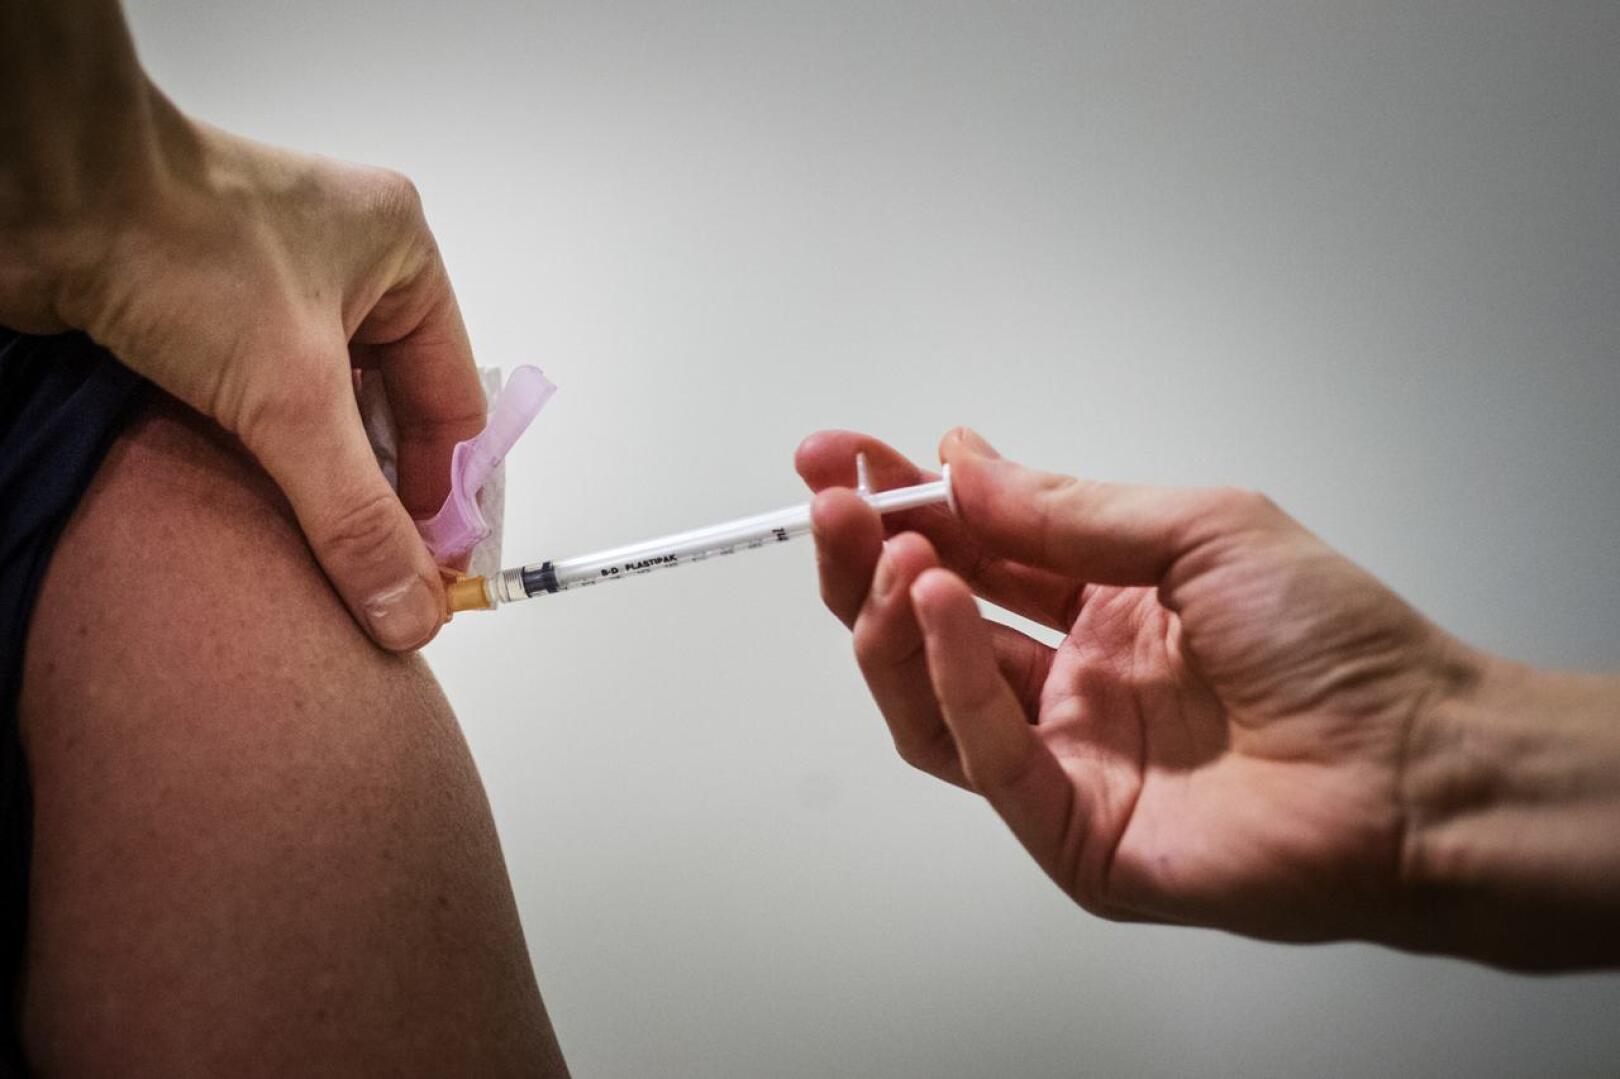 Kansallinen rokotusasiantuntijaryhmä suosittelee, että AstraZenecan koronavirusrokotetta käytetään toistaiseksi alle 70-vuotiaiden rokottamiseen.